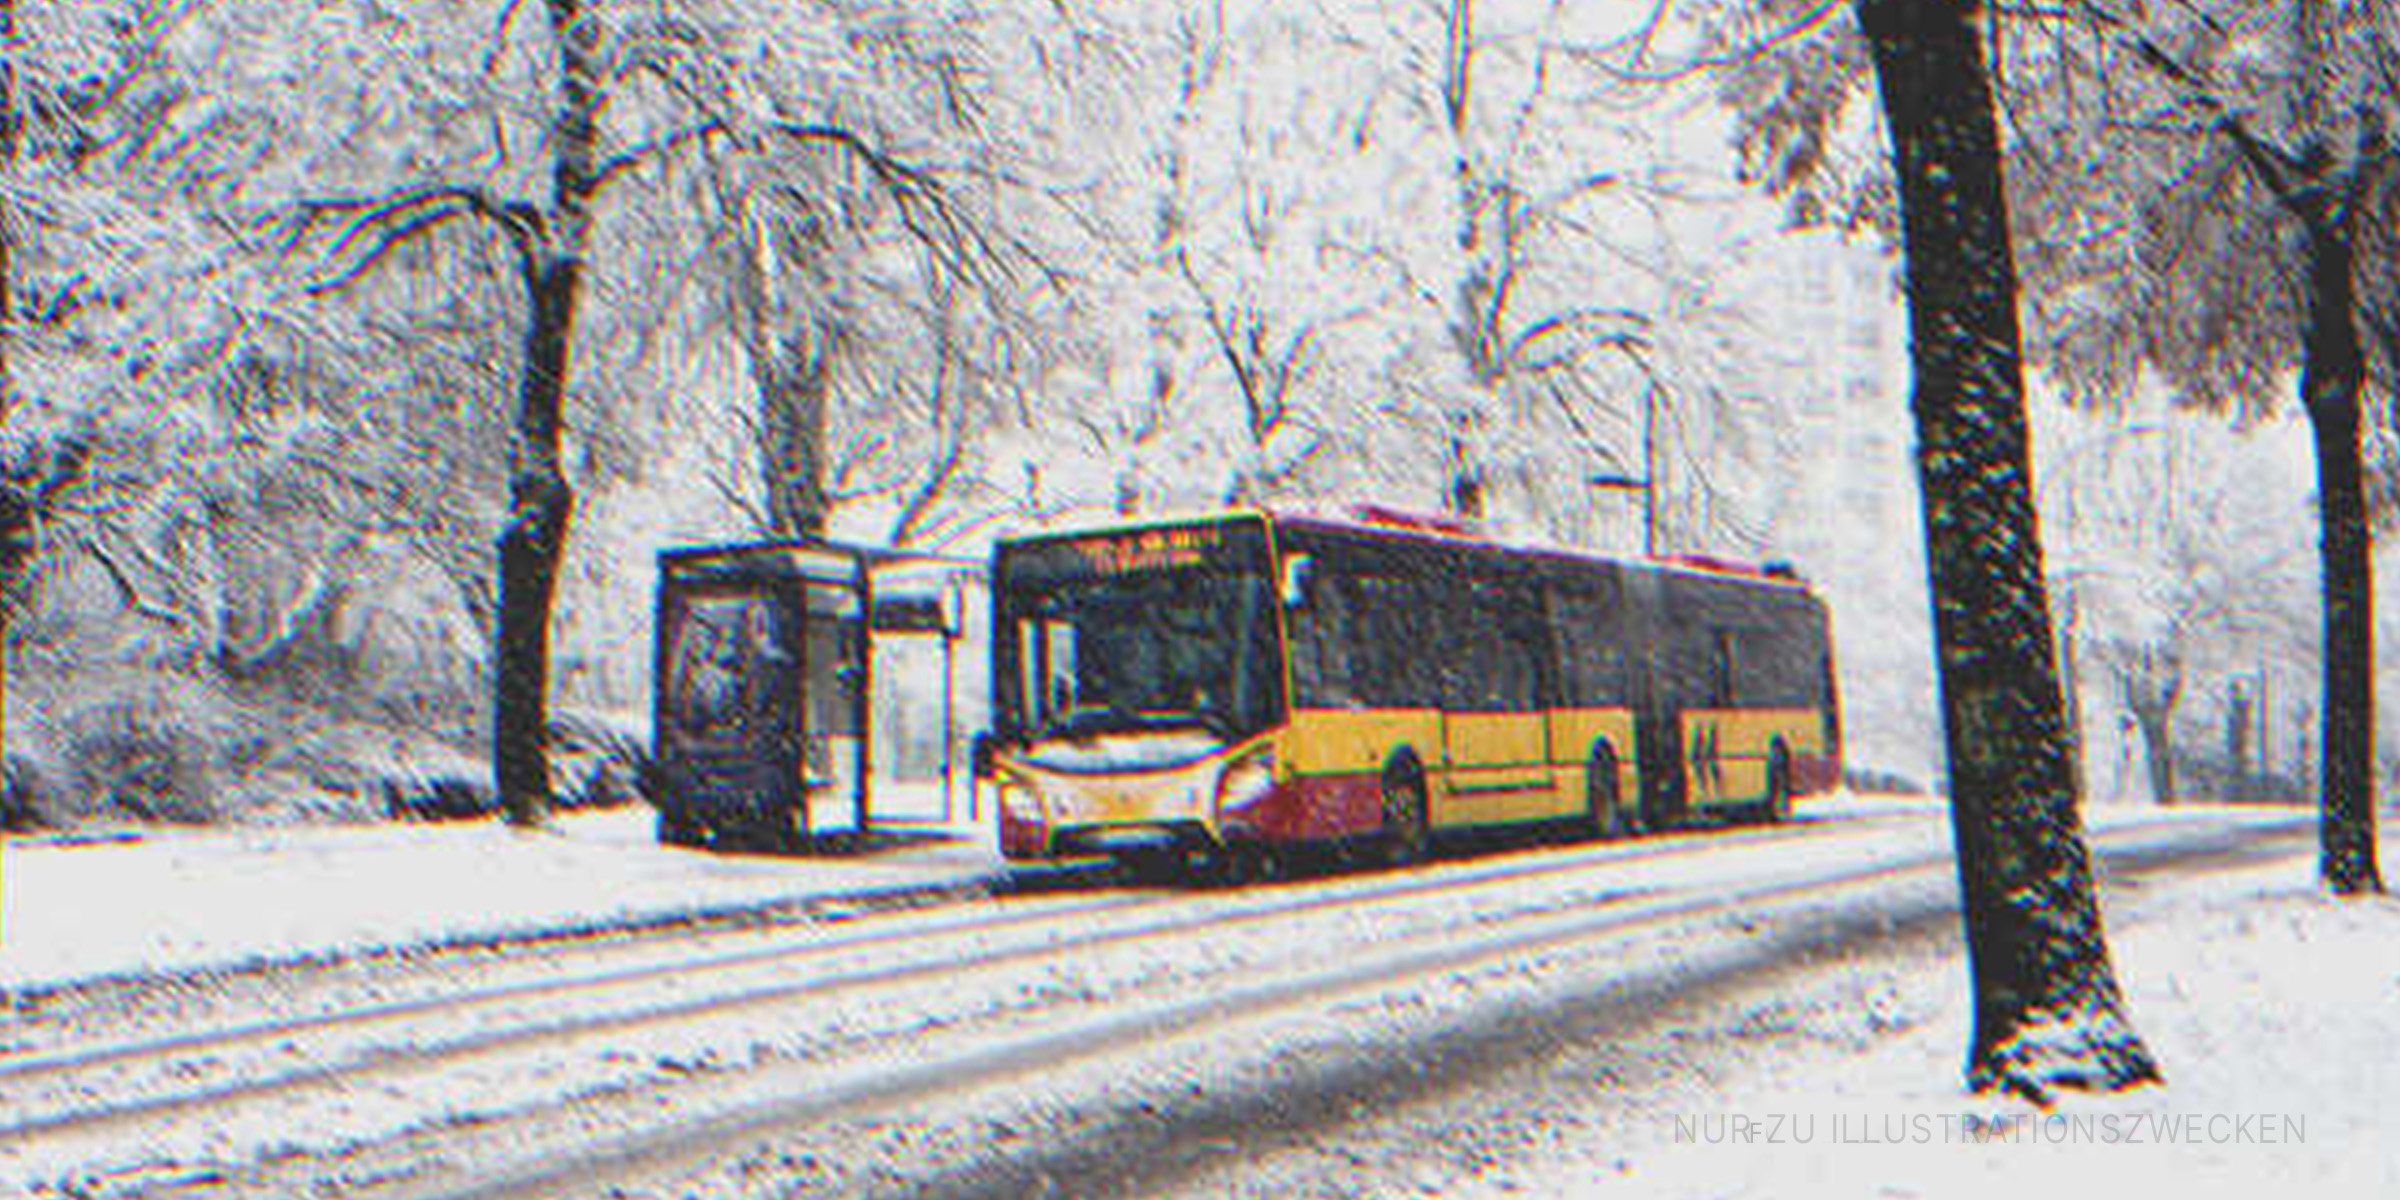 Bus auf einer verschneiten Straße. | Quelle: Shutterstock